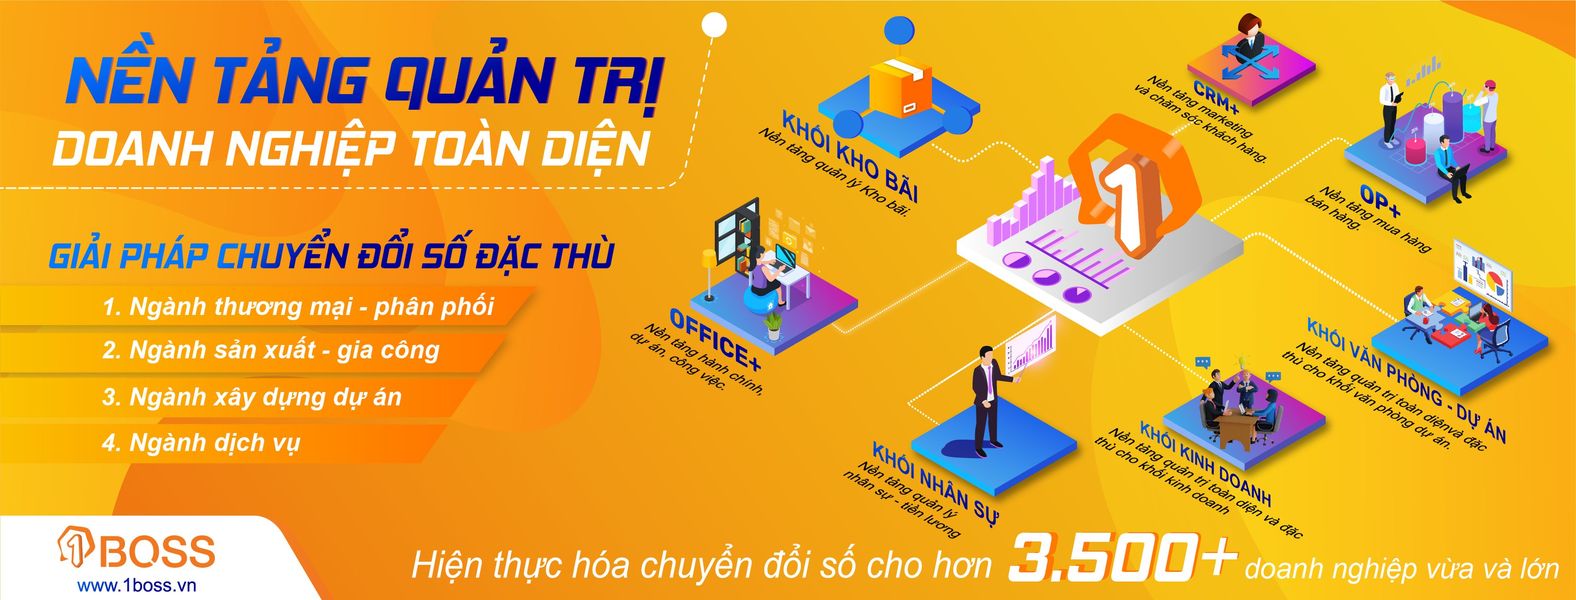 Top 3 phần mềm quản trị doanh nghiệp nhỏ và vừa tốt nhất Việt Nam